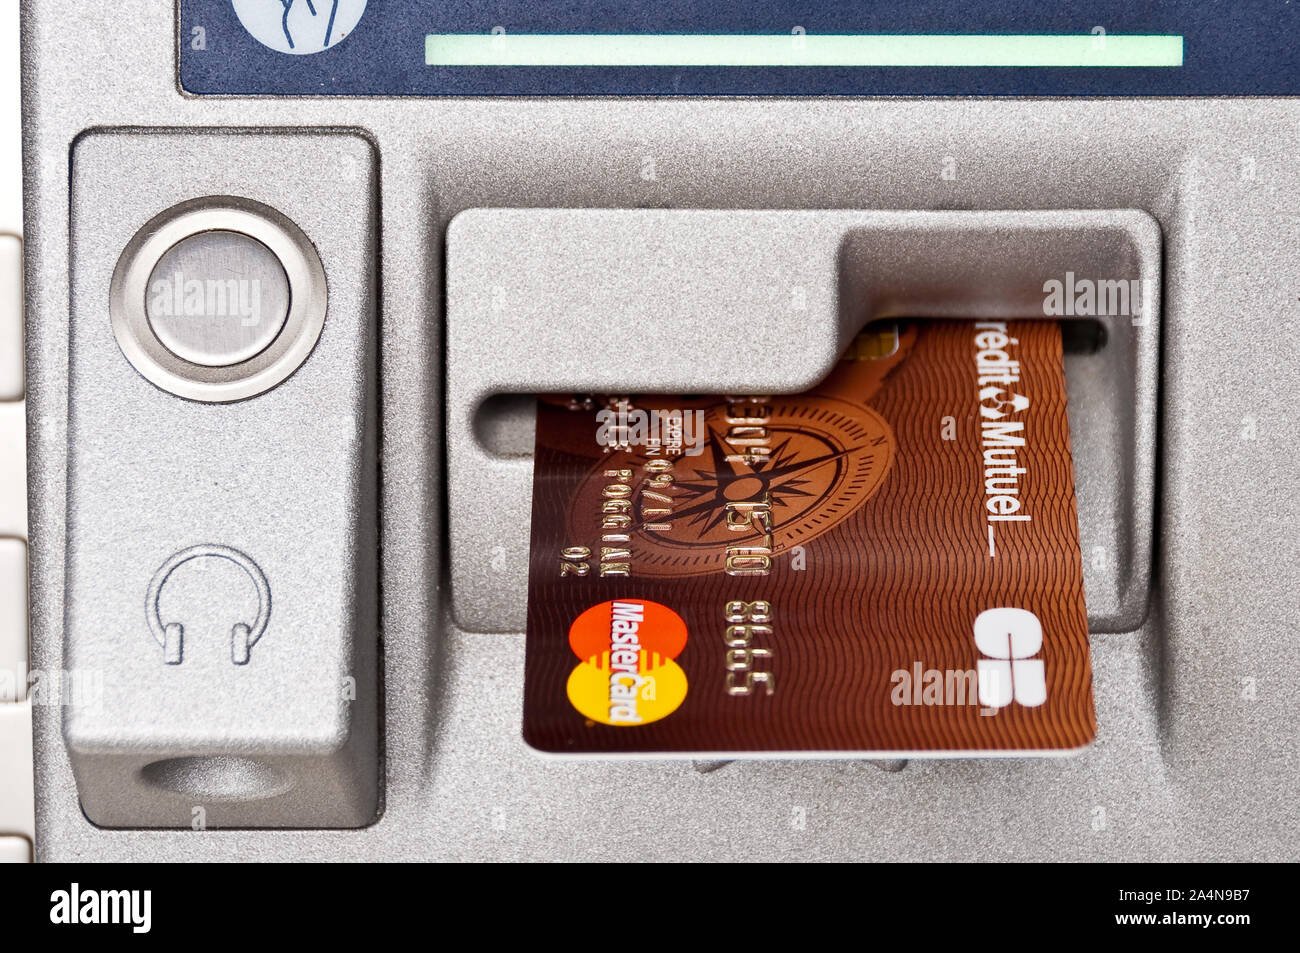 Gros plan d'une carte de crédit Mastercard dans un distributeur de billets ATM à Fontainebleau, France Banque D'Images